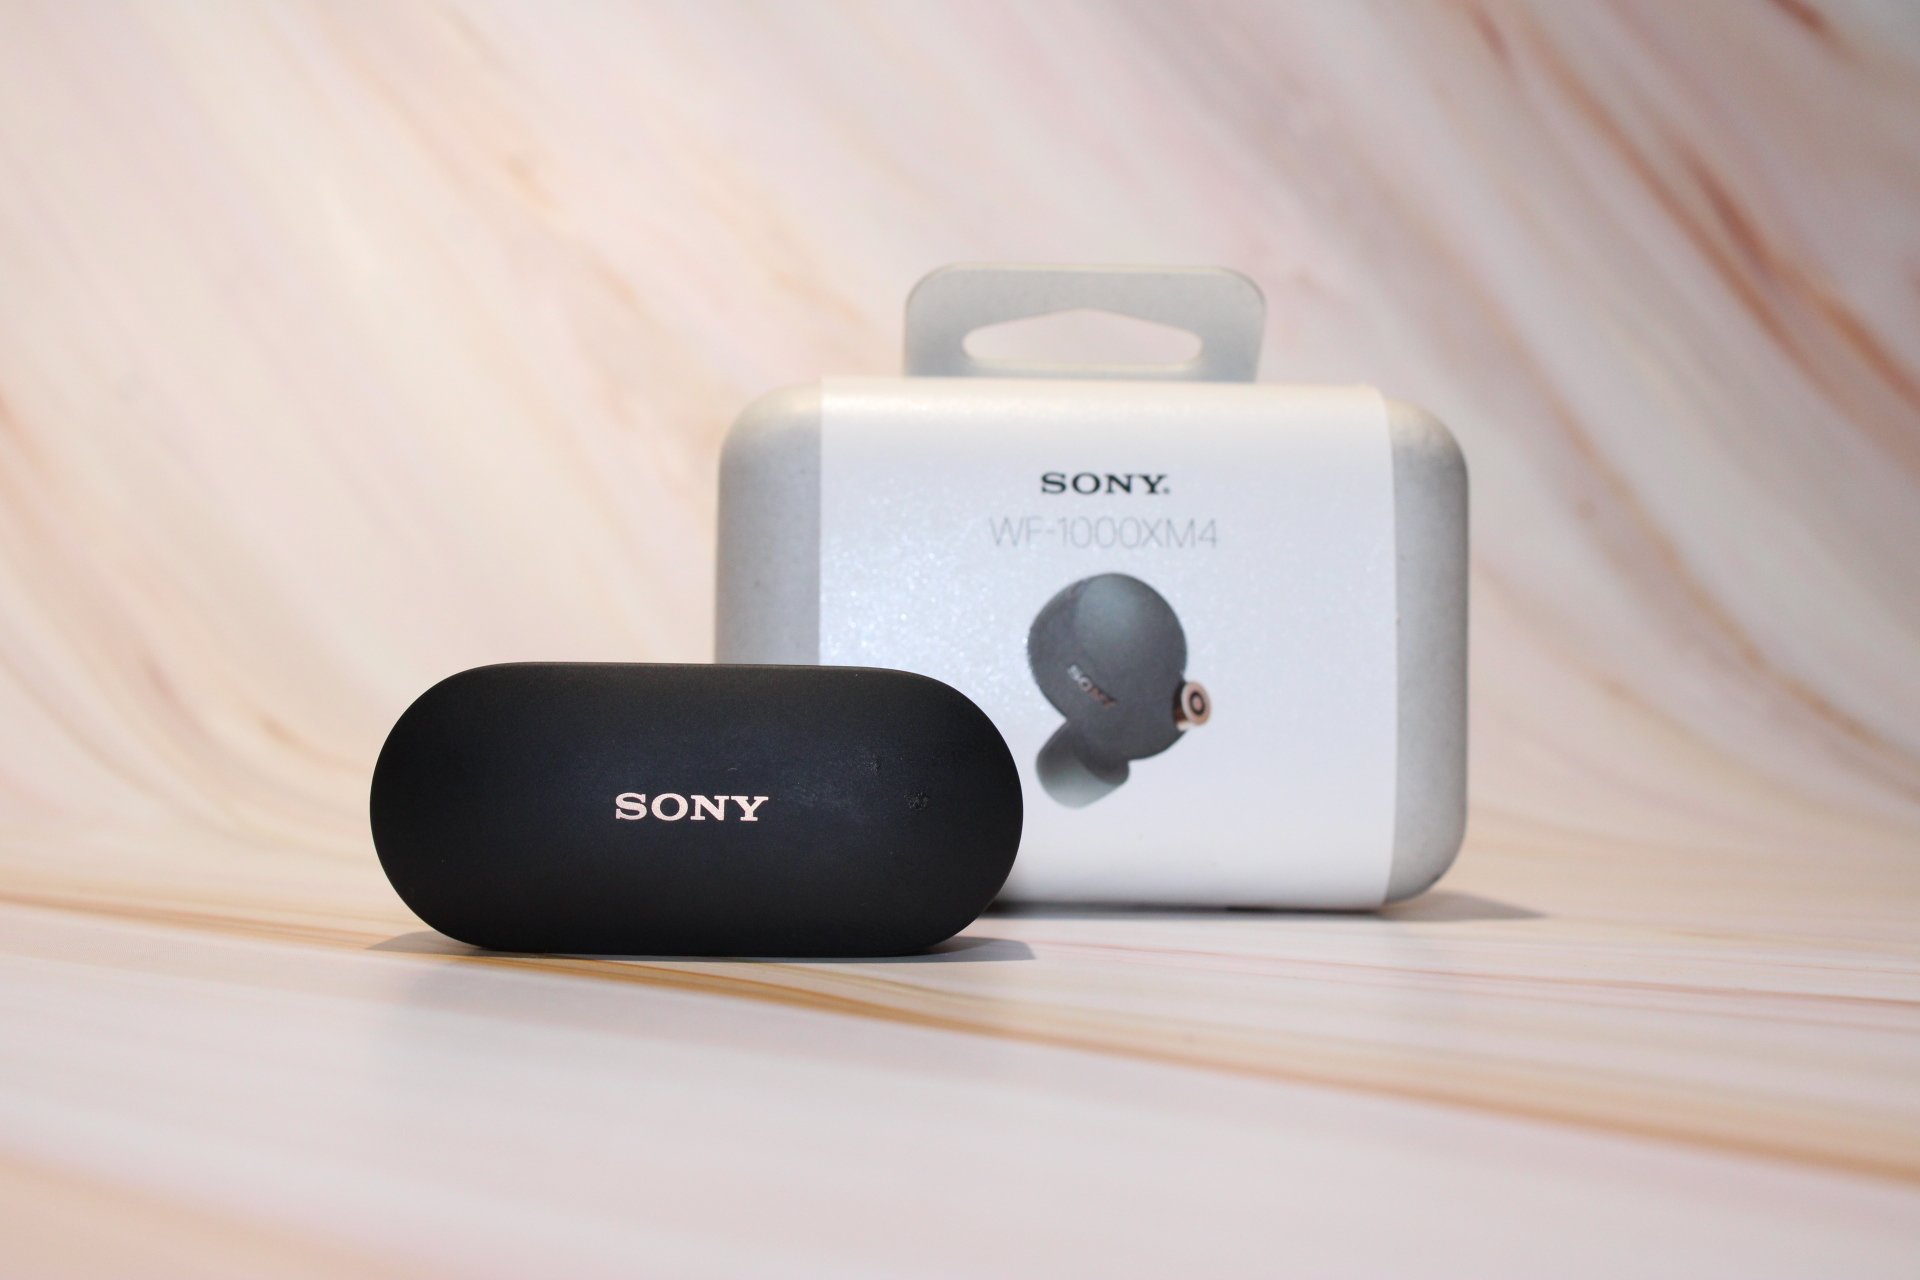 Sony Wf1000xm4 Earbuds in case